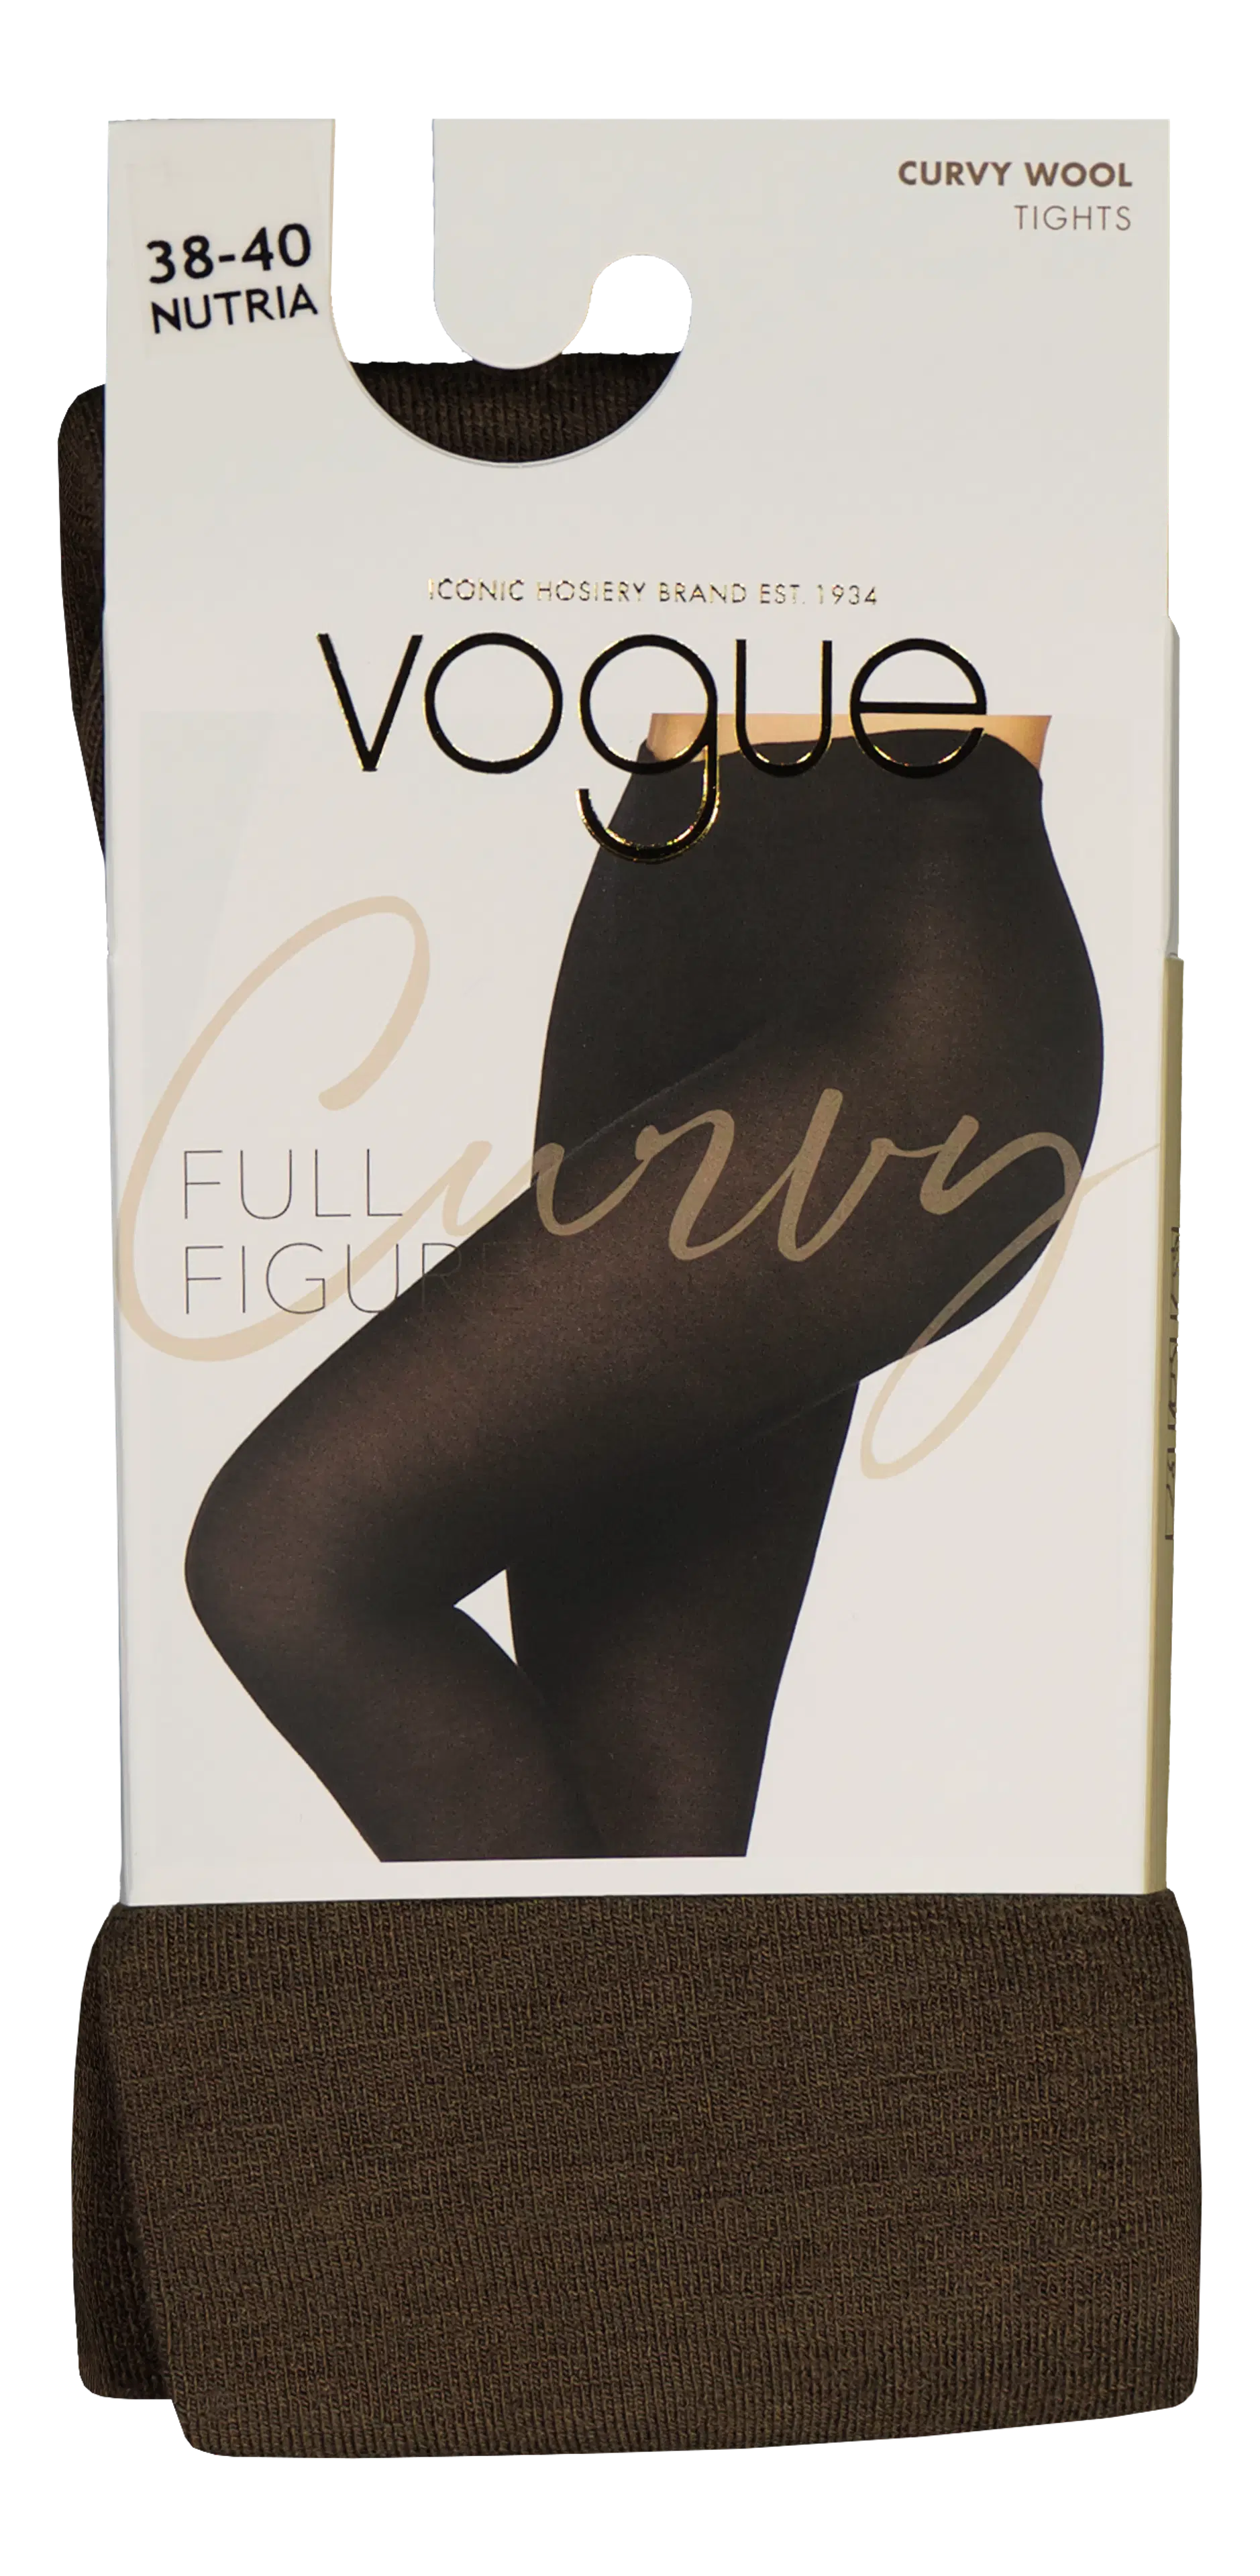 Vogue Curvy Wool sukkahousut